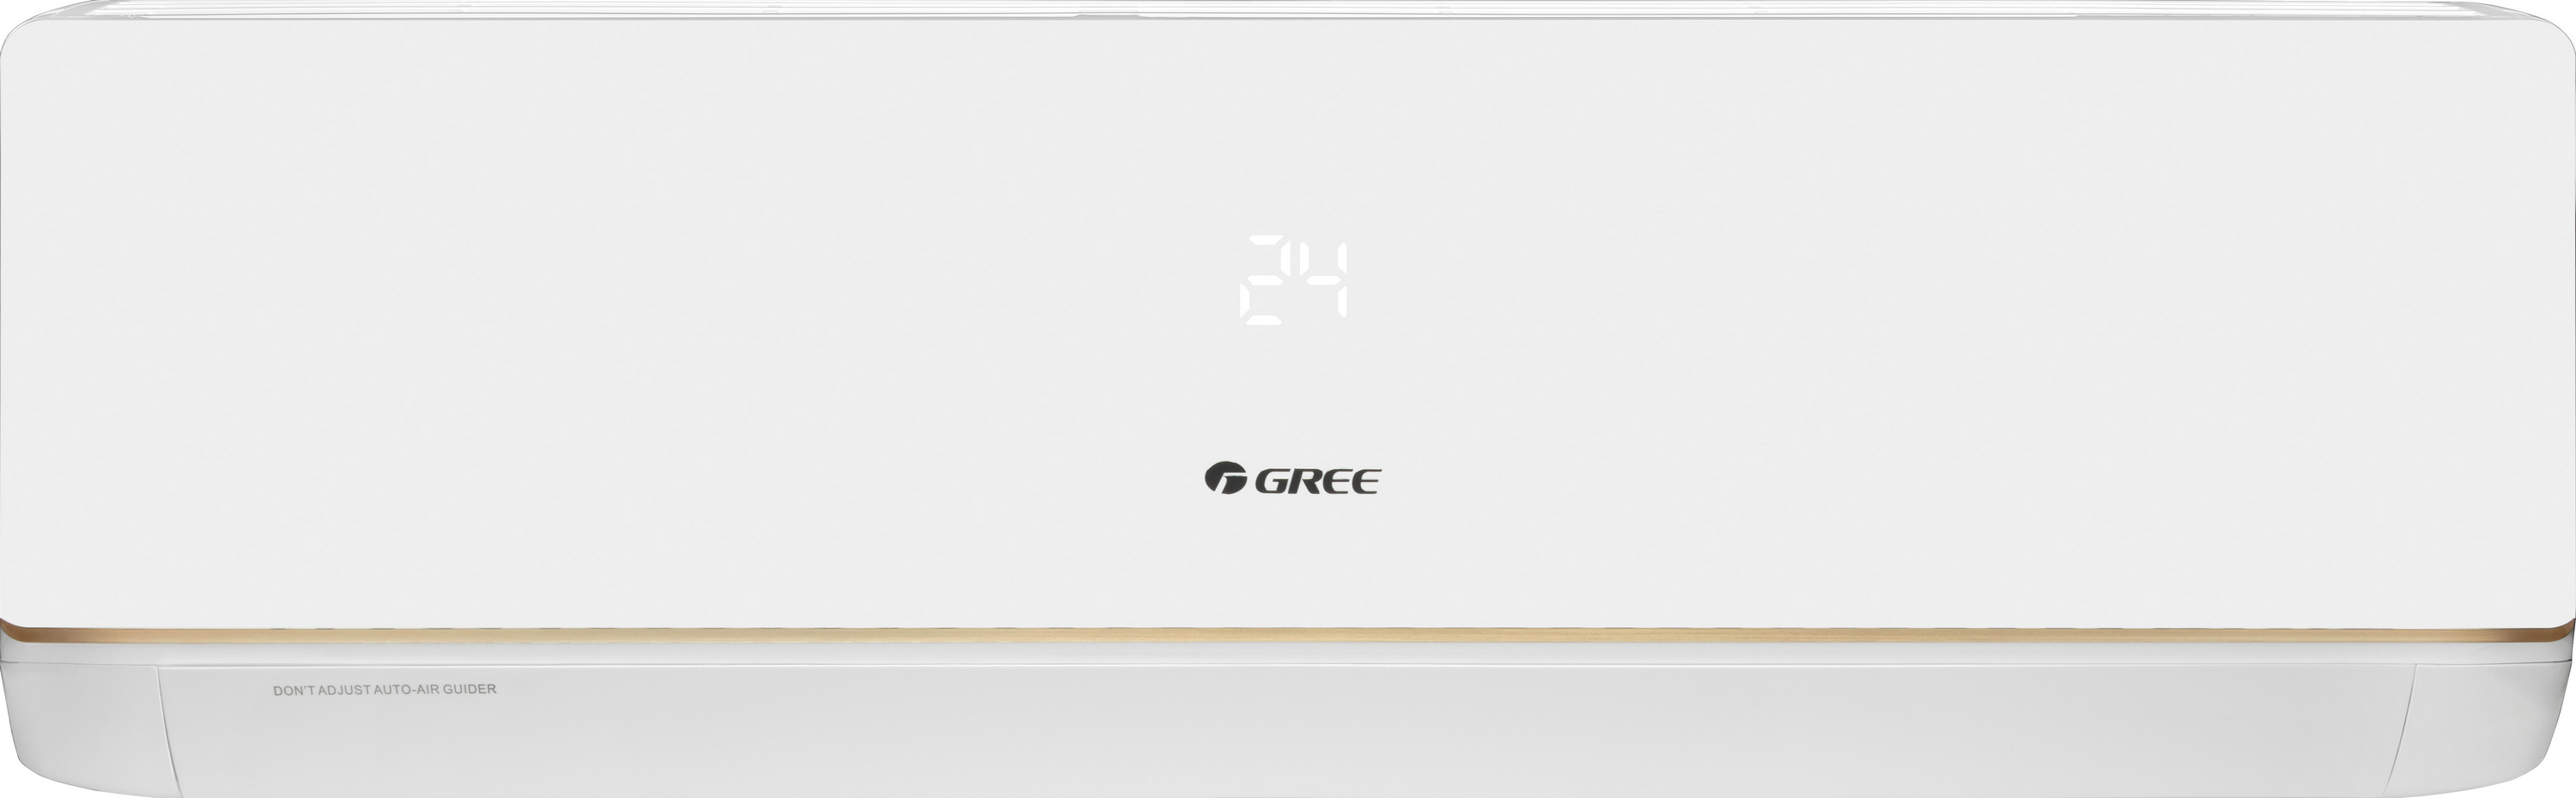 Кондиціонер спліт-система Gree Bora Inverter R32 GWH24AAD-K6DNA5A Wi-Fi ціна 58950.00 грн - фотографія 2